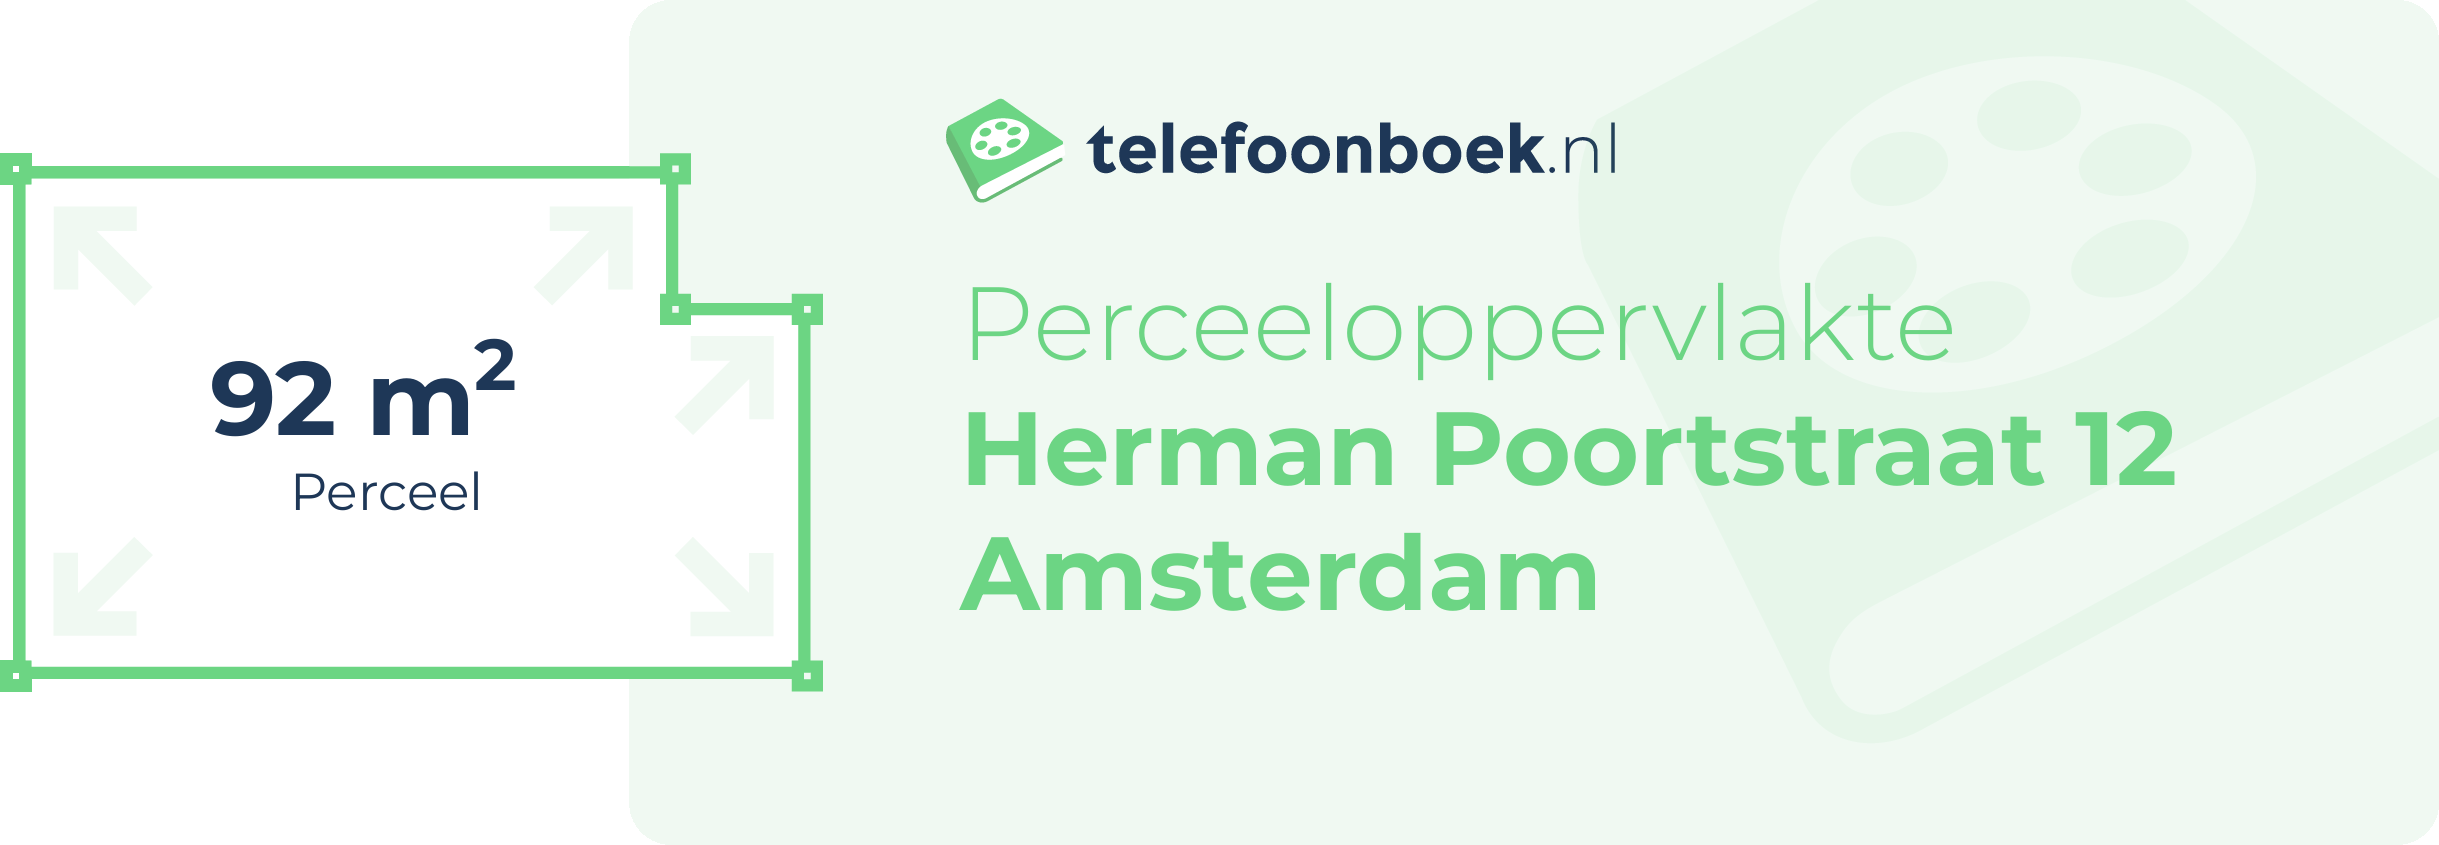 Perceeloppervlakte Herman Poortstraat 12 Amsterdam